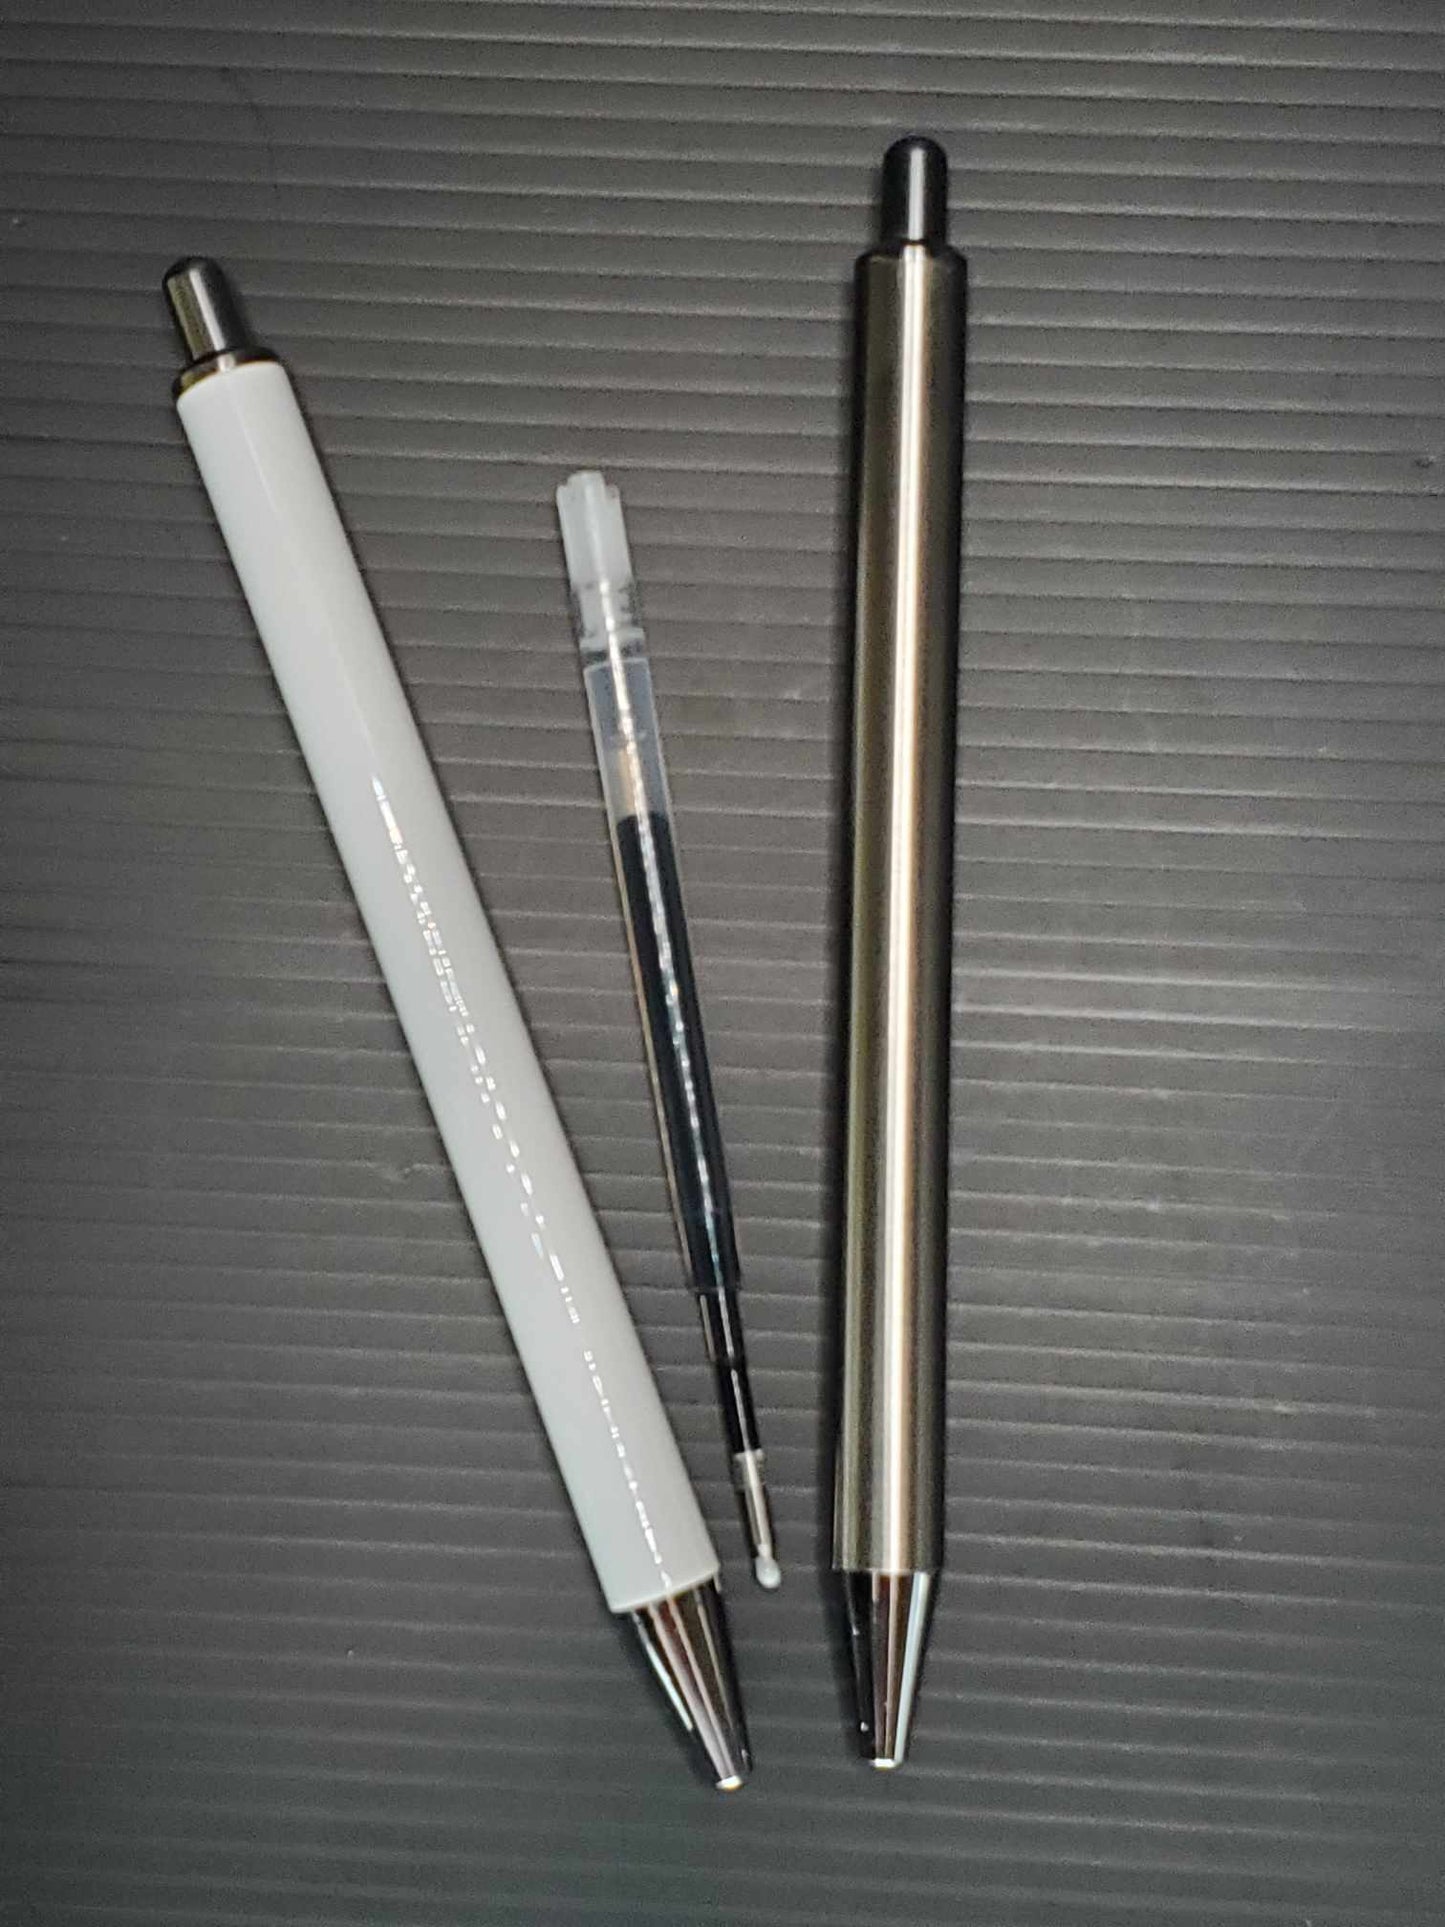 6 White Stainless Steel Pens (1 Refill per pen)